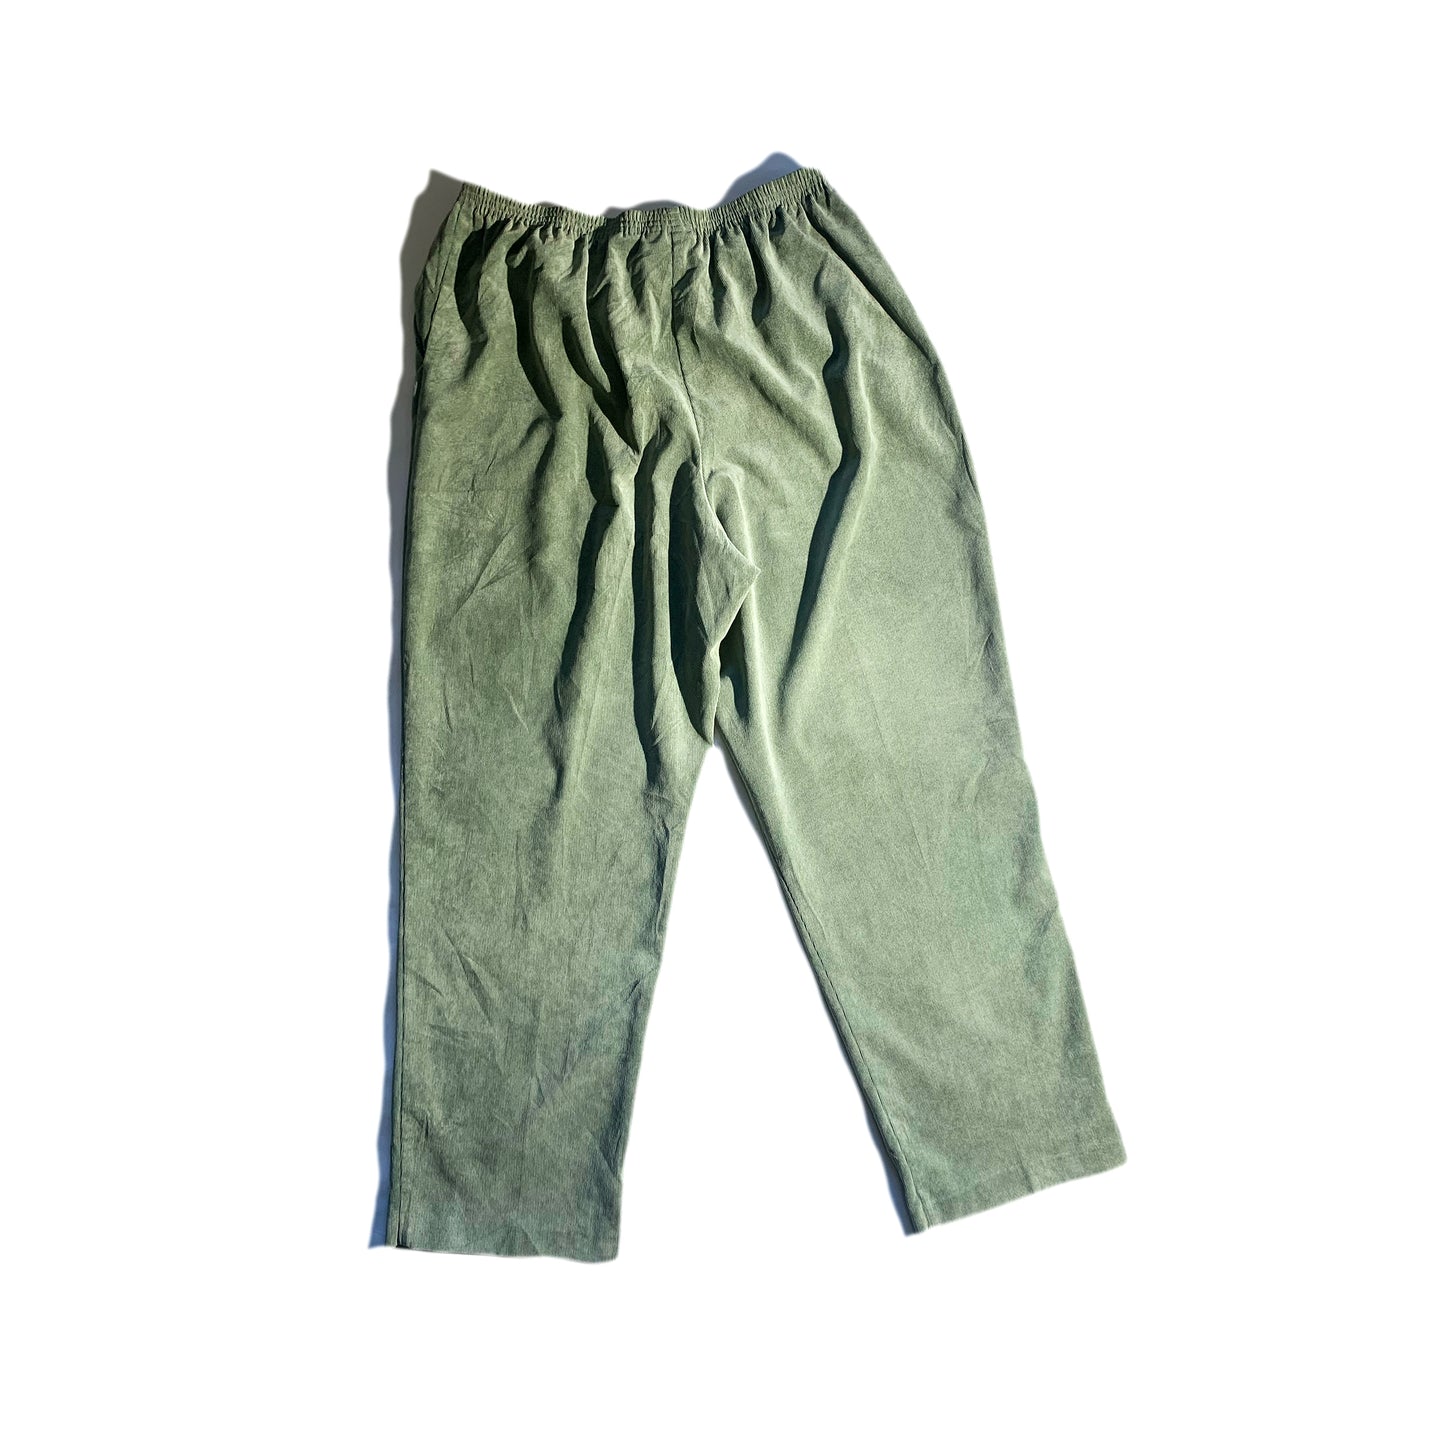 Vintage Elastic Corduroy Pants